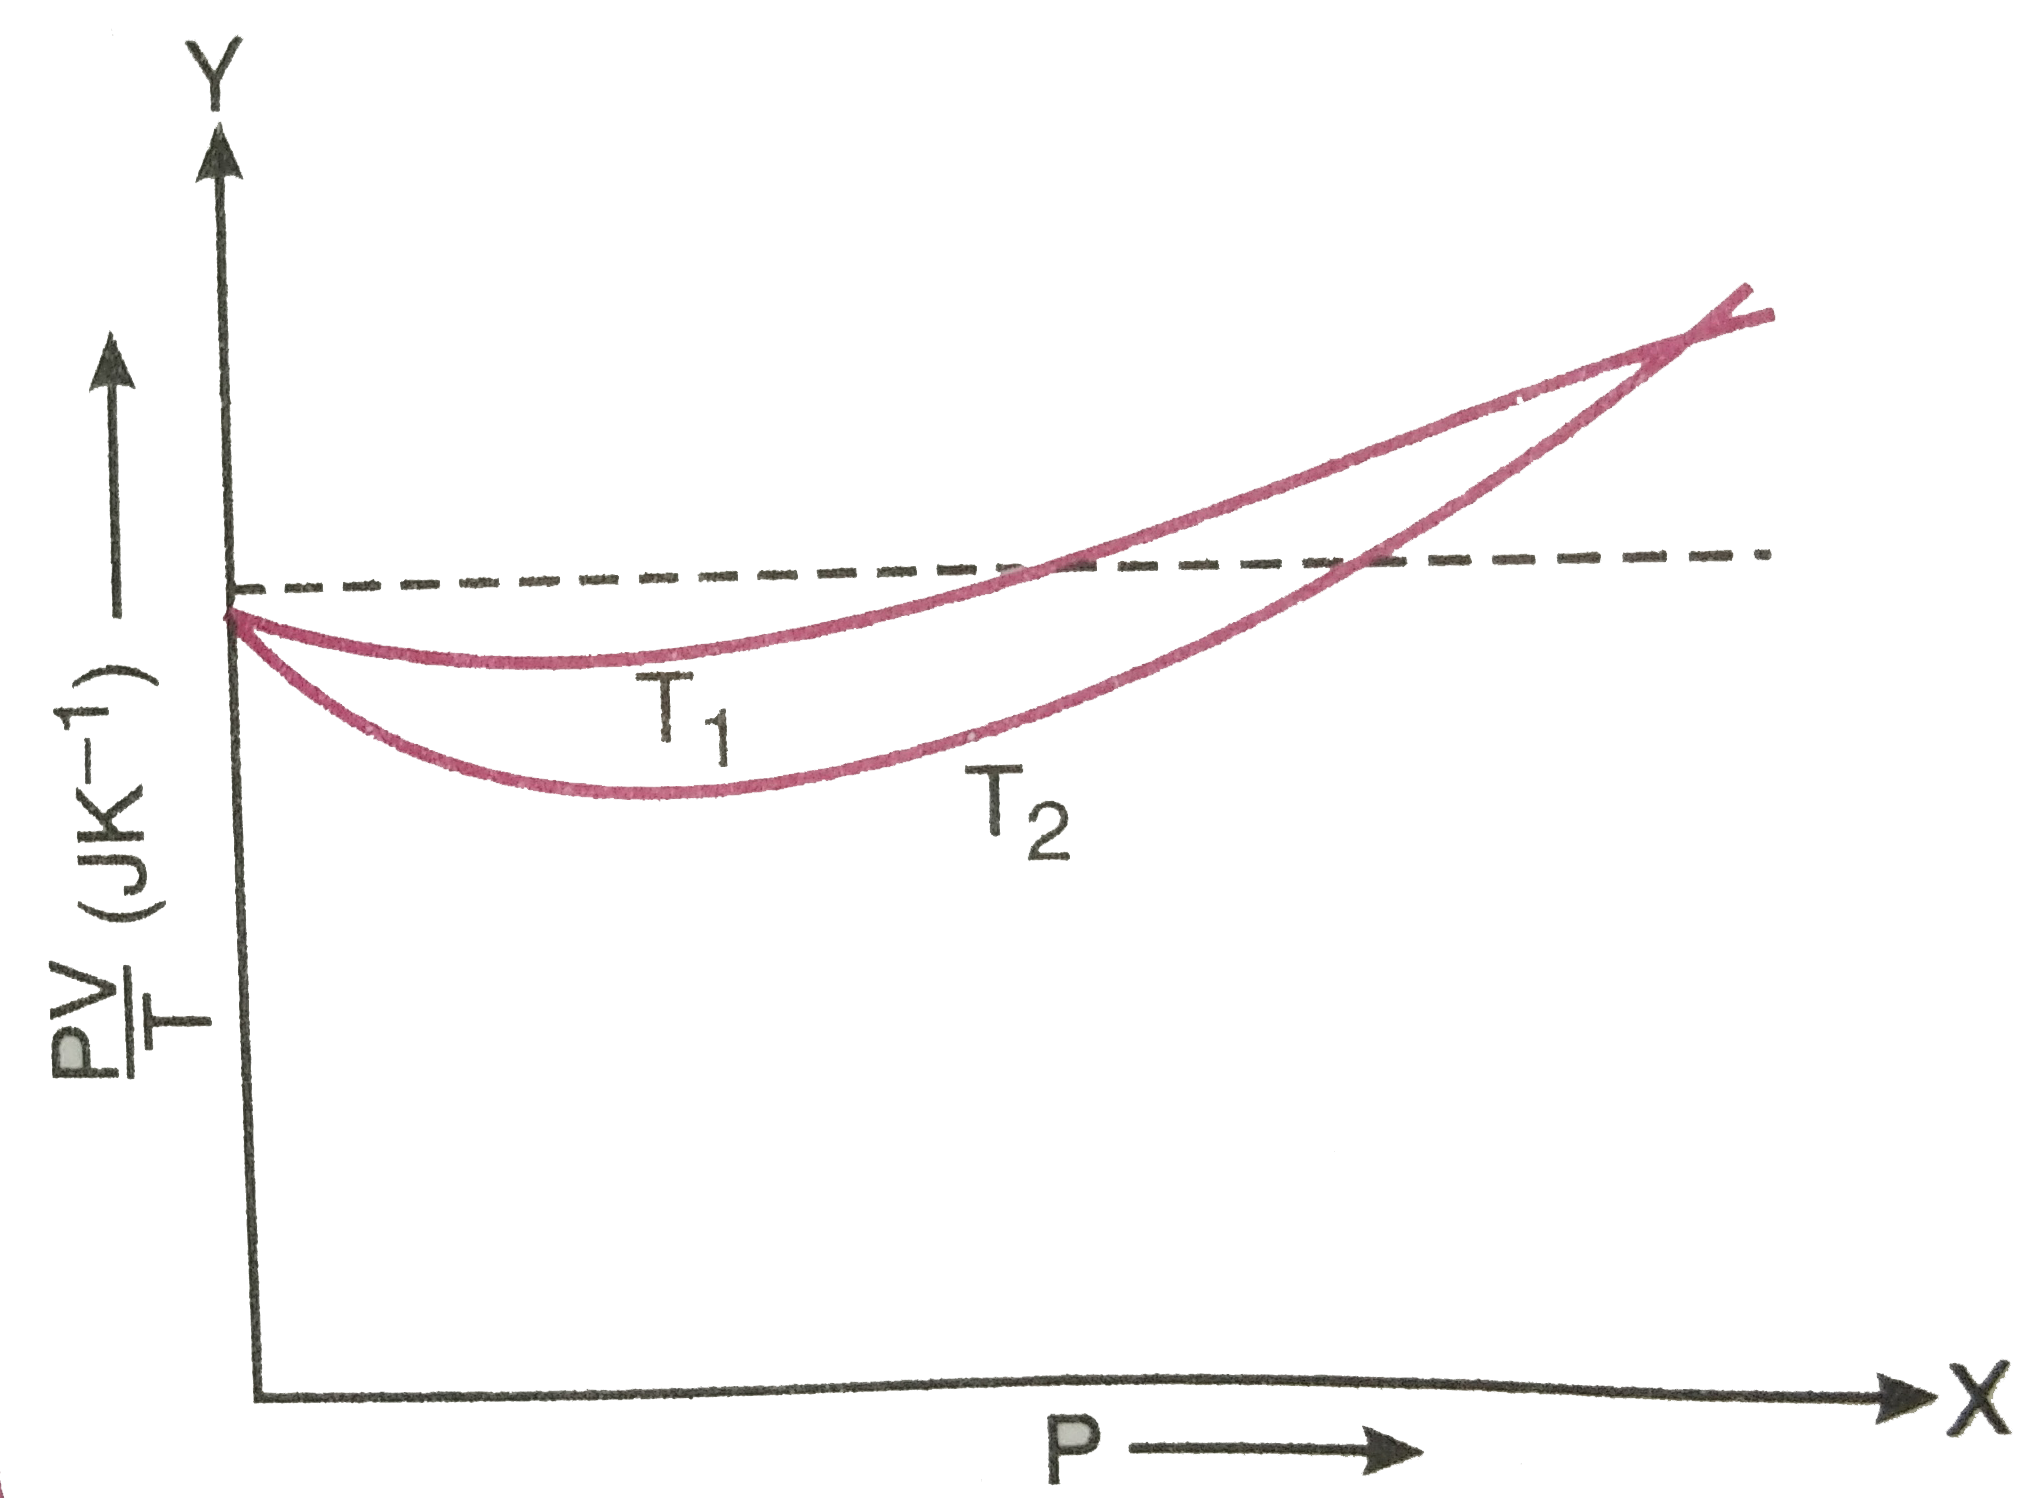 चित्र 14.11 में ऑक्सीजन के 1*00xx10^(-3) किग्रा द्रव्यमान के लिए PV/T एवं P में, दो अलग-अलग तापो पर ग्राफ दर्शाये गए है ?   क्या सत्य है - T(1)gtT(2) अथवा T(1)ltT(2) ?